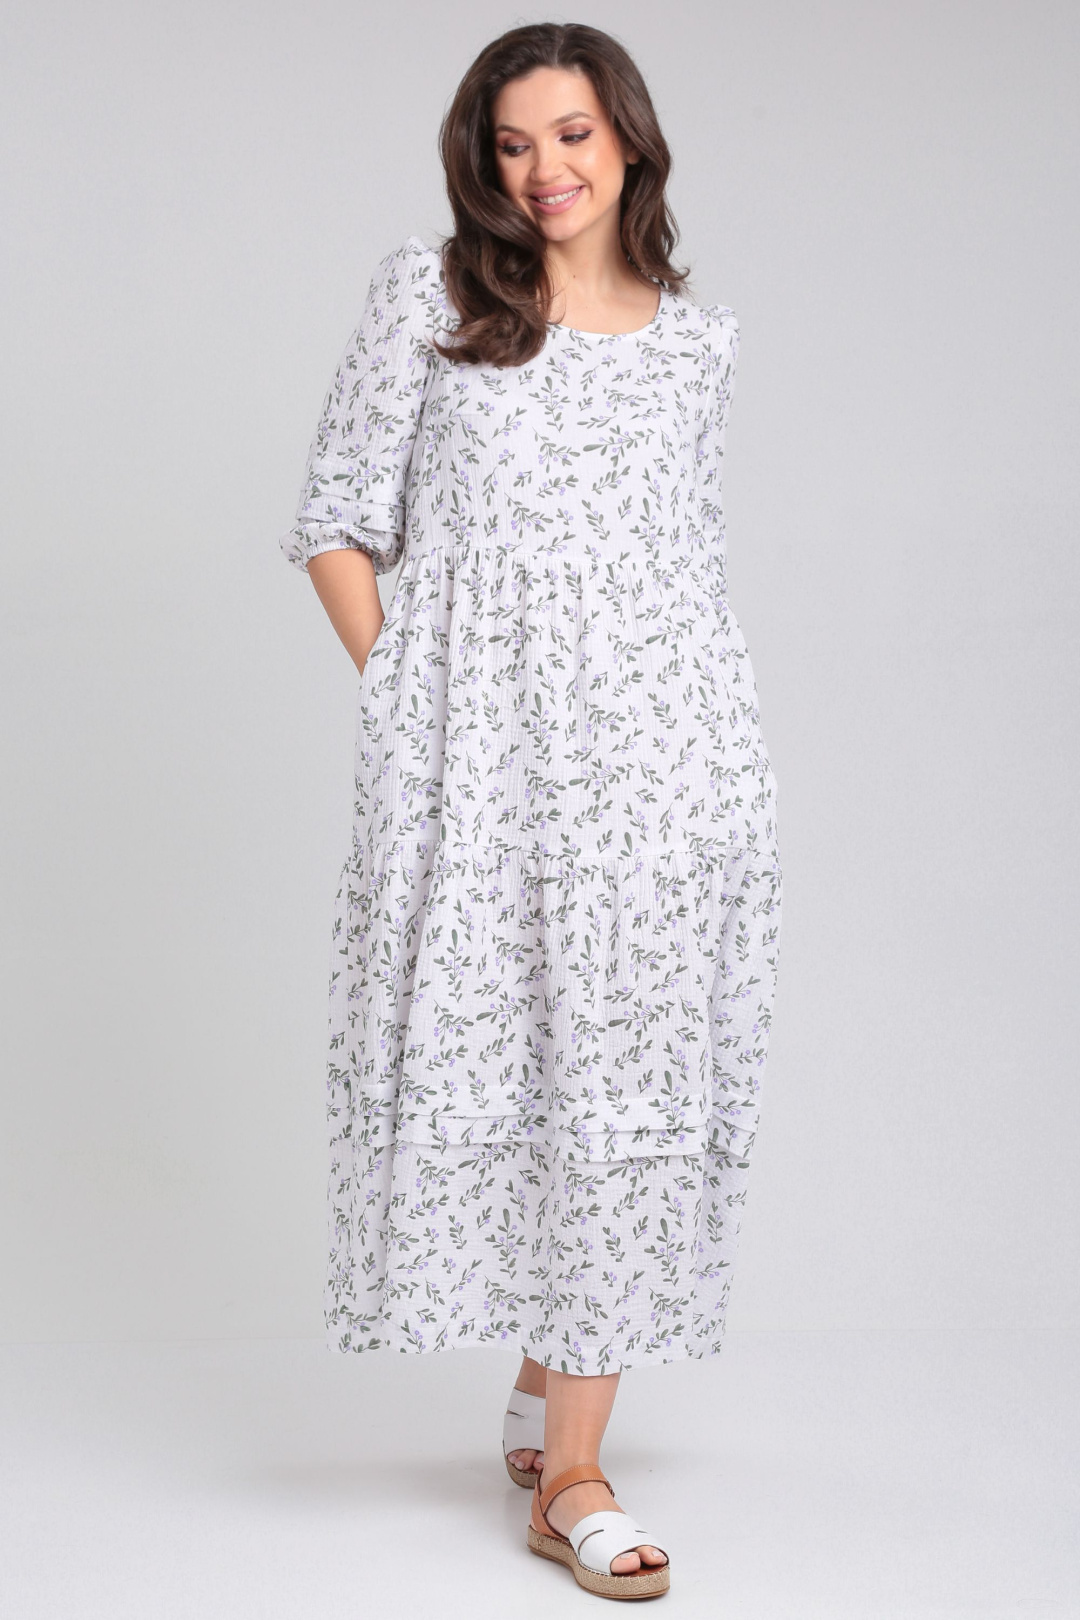 Платье LeNata 13273 дизайн на белом